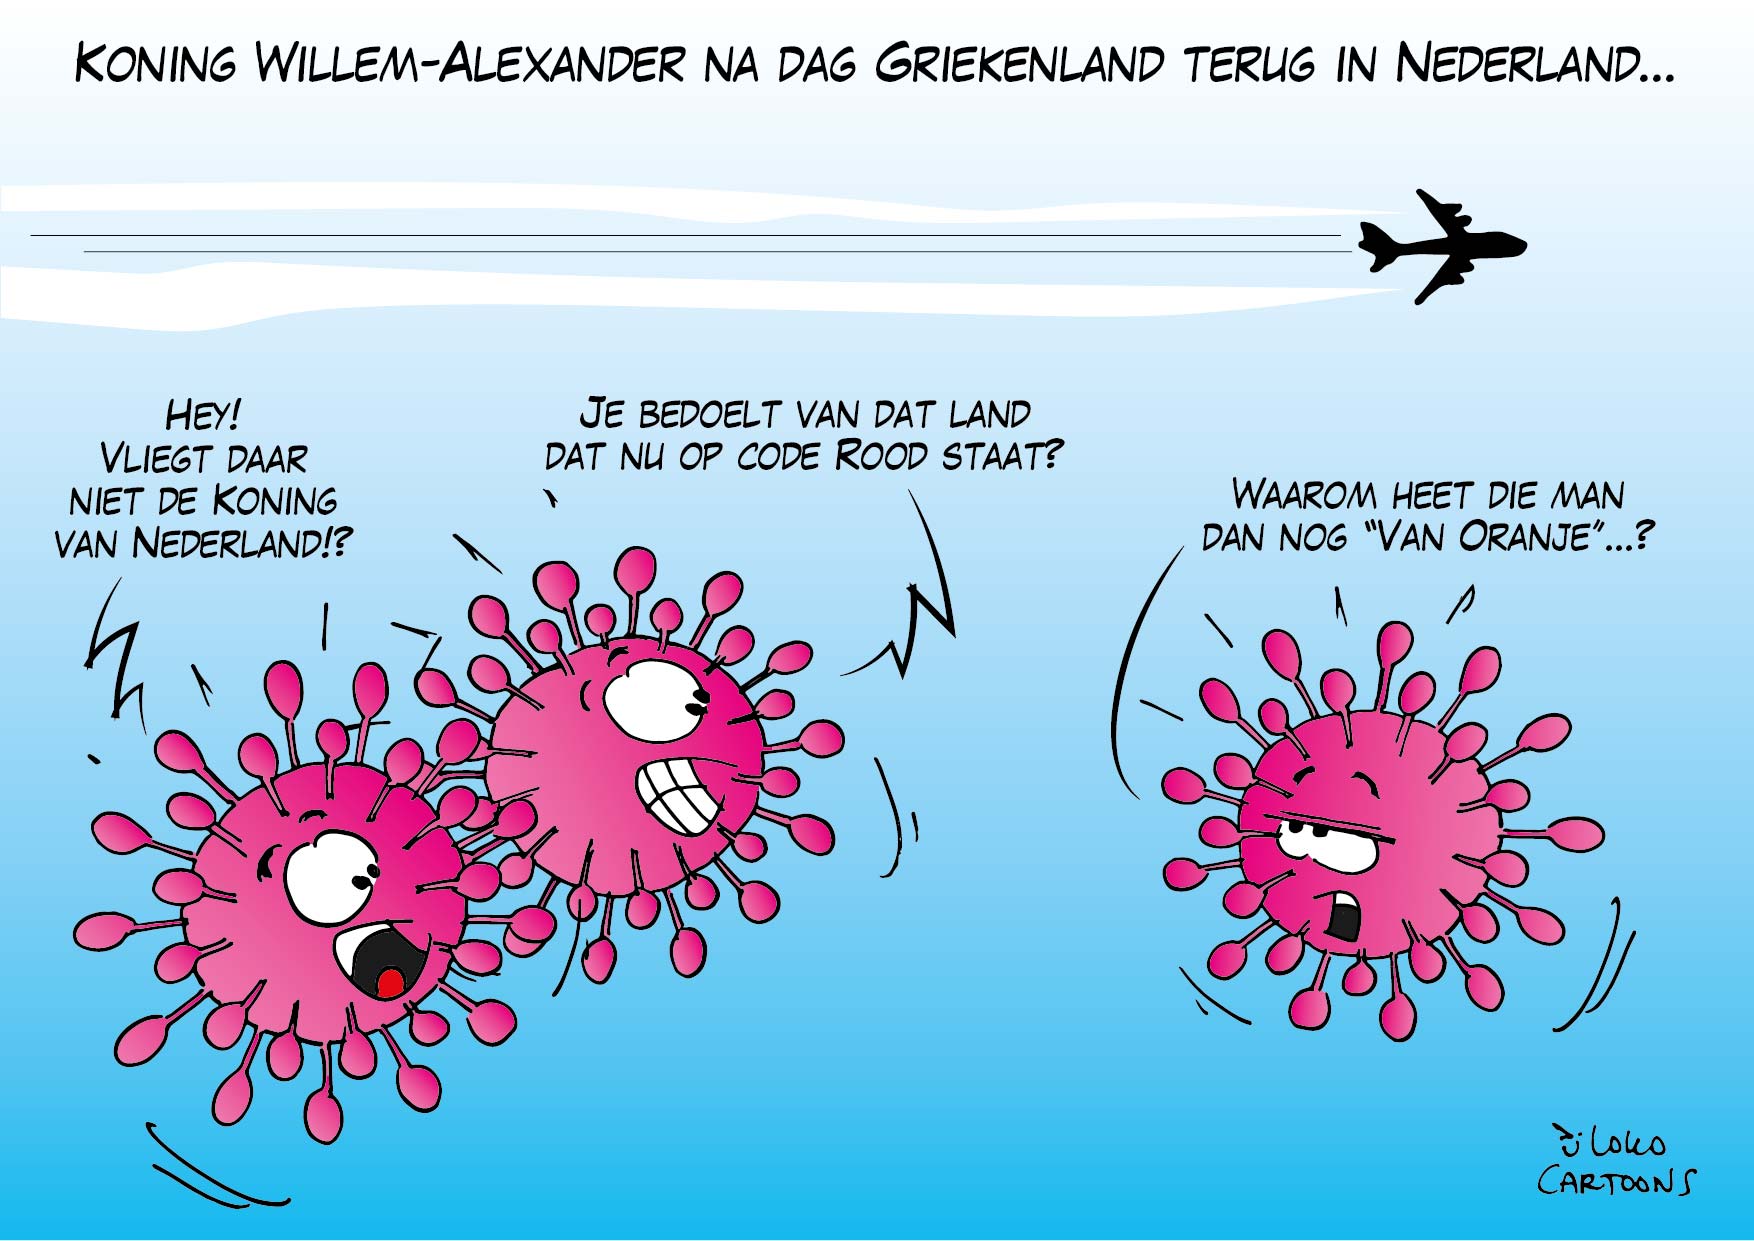 Koning Willem-Alexander na dag Griekenland terug in Nederland…